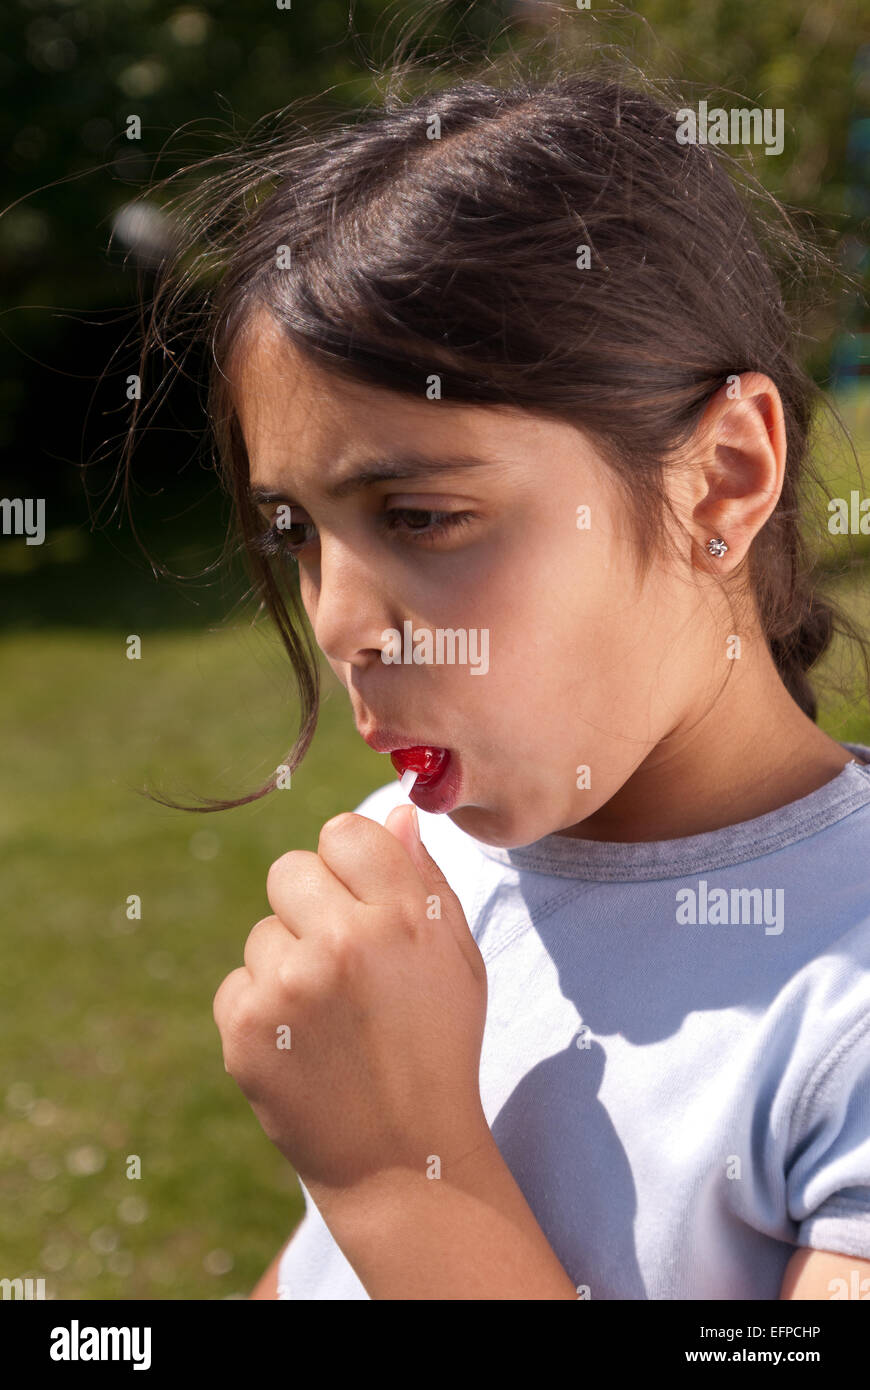 Glückliches Kind junge Mädchen außerhalb saugen Lutscher süß auf einem Papier Griff Zähne kümmern musst due Zucker Stockfoto